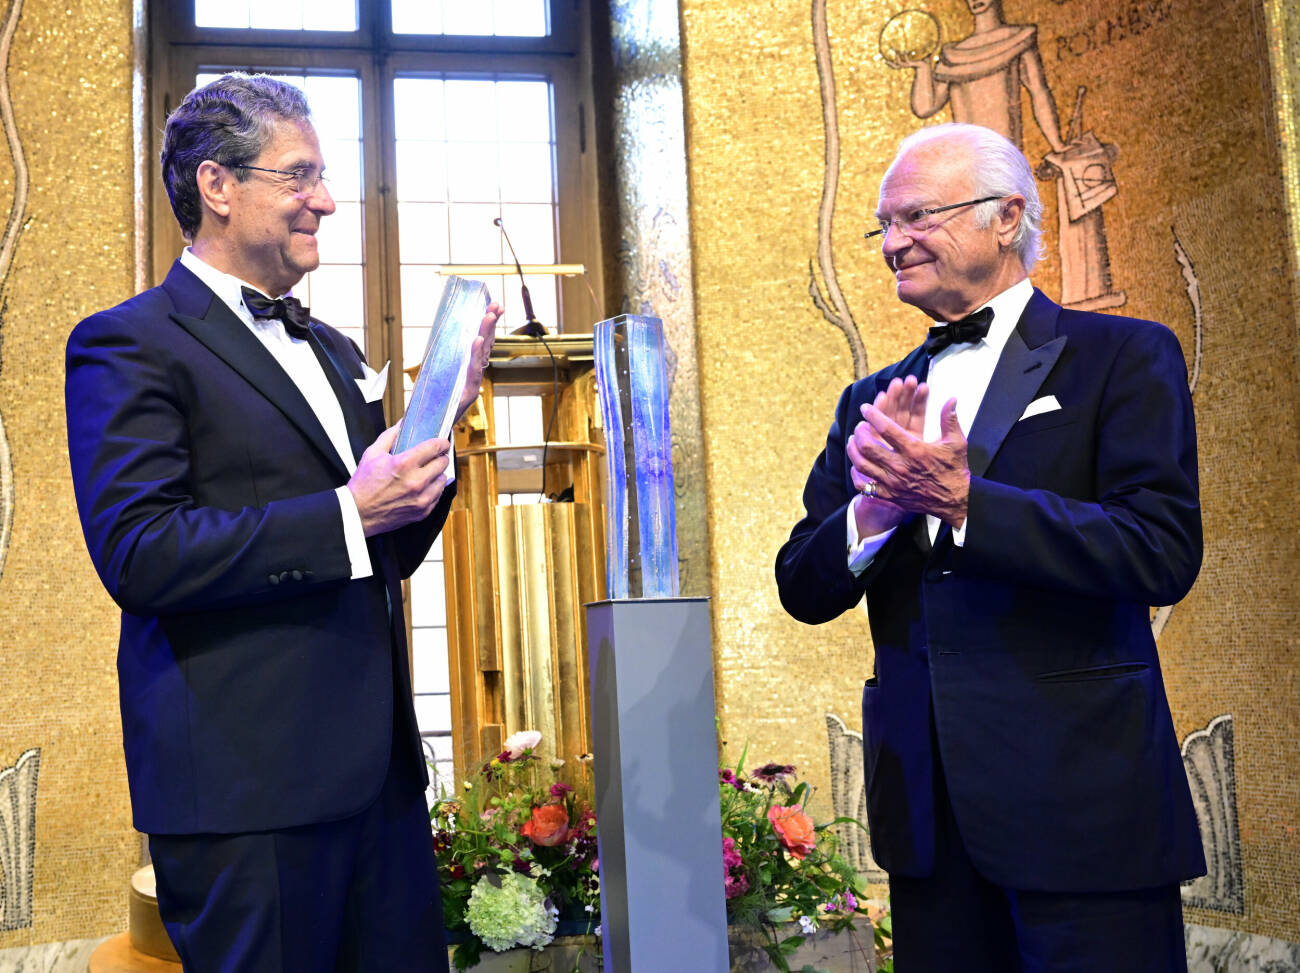 Mottagare av Stockholm Water Prize 2023: Professor Andrea Rinaldo, här med kungen.